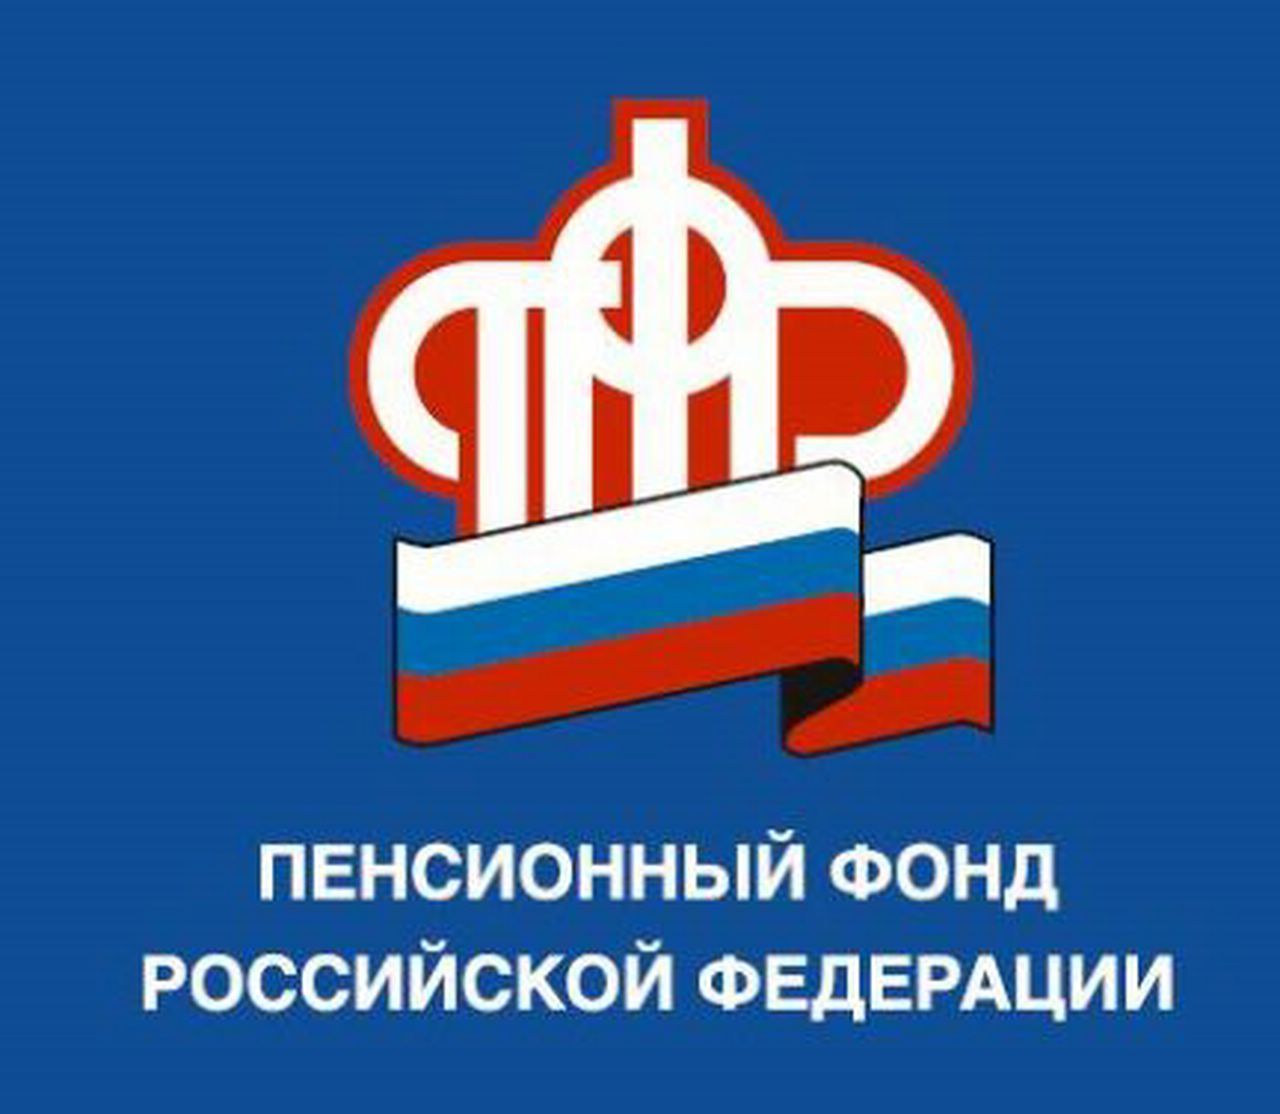 Башкортостан: 262 тыс. заявлений на материнский капитал